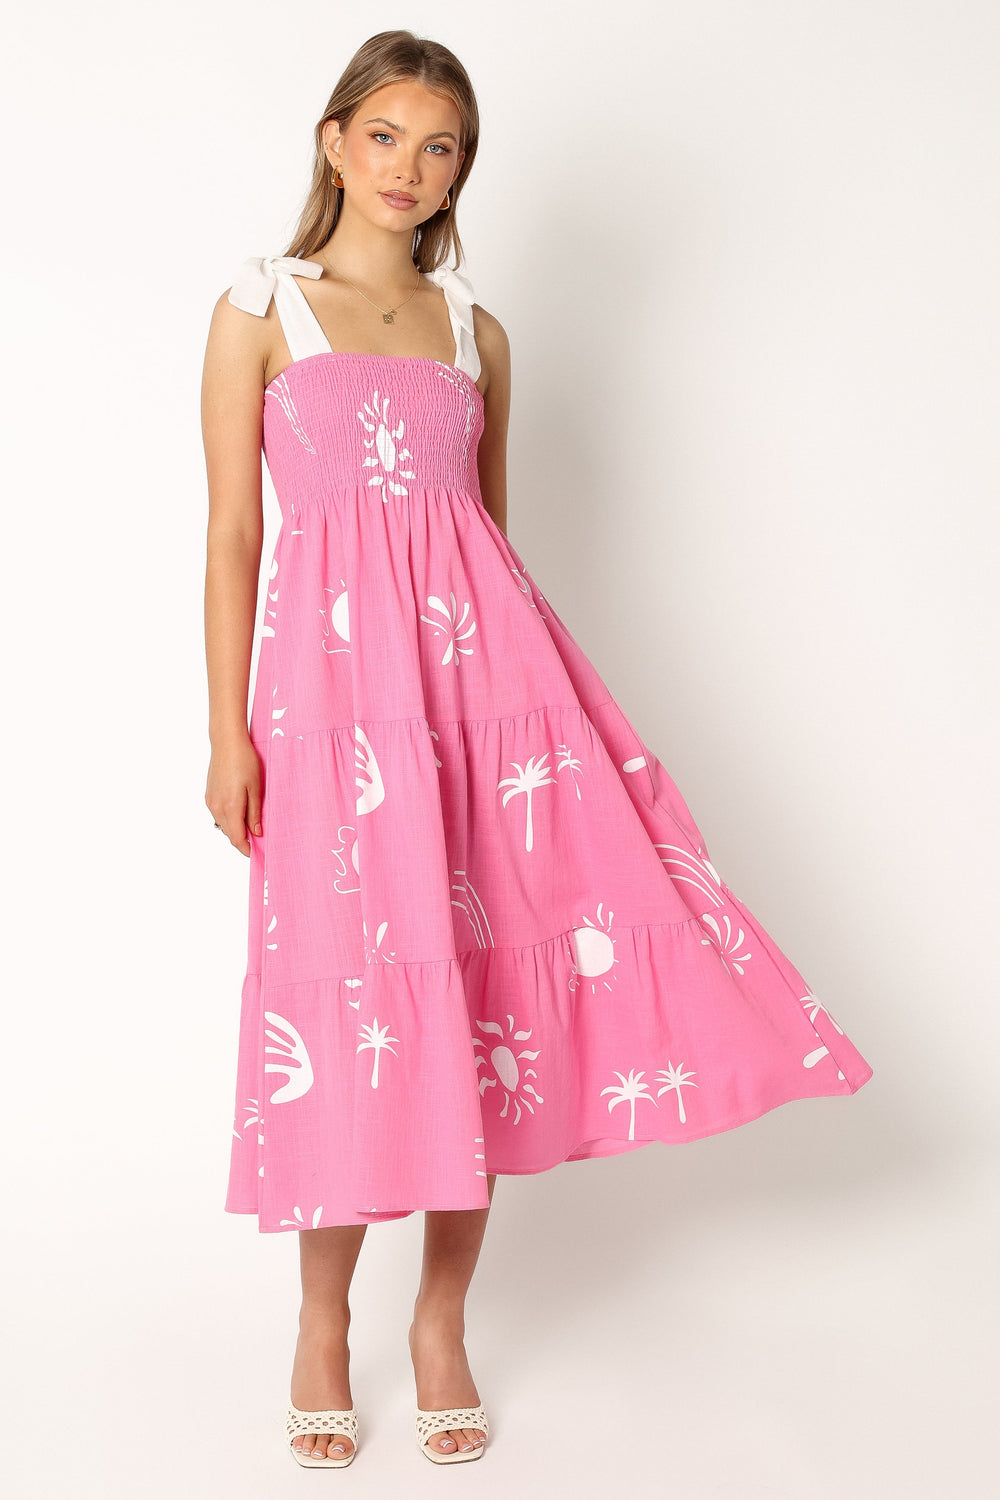 Petal and Pup USA DRESSES Sarelle Midi Dress - Hot Pink